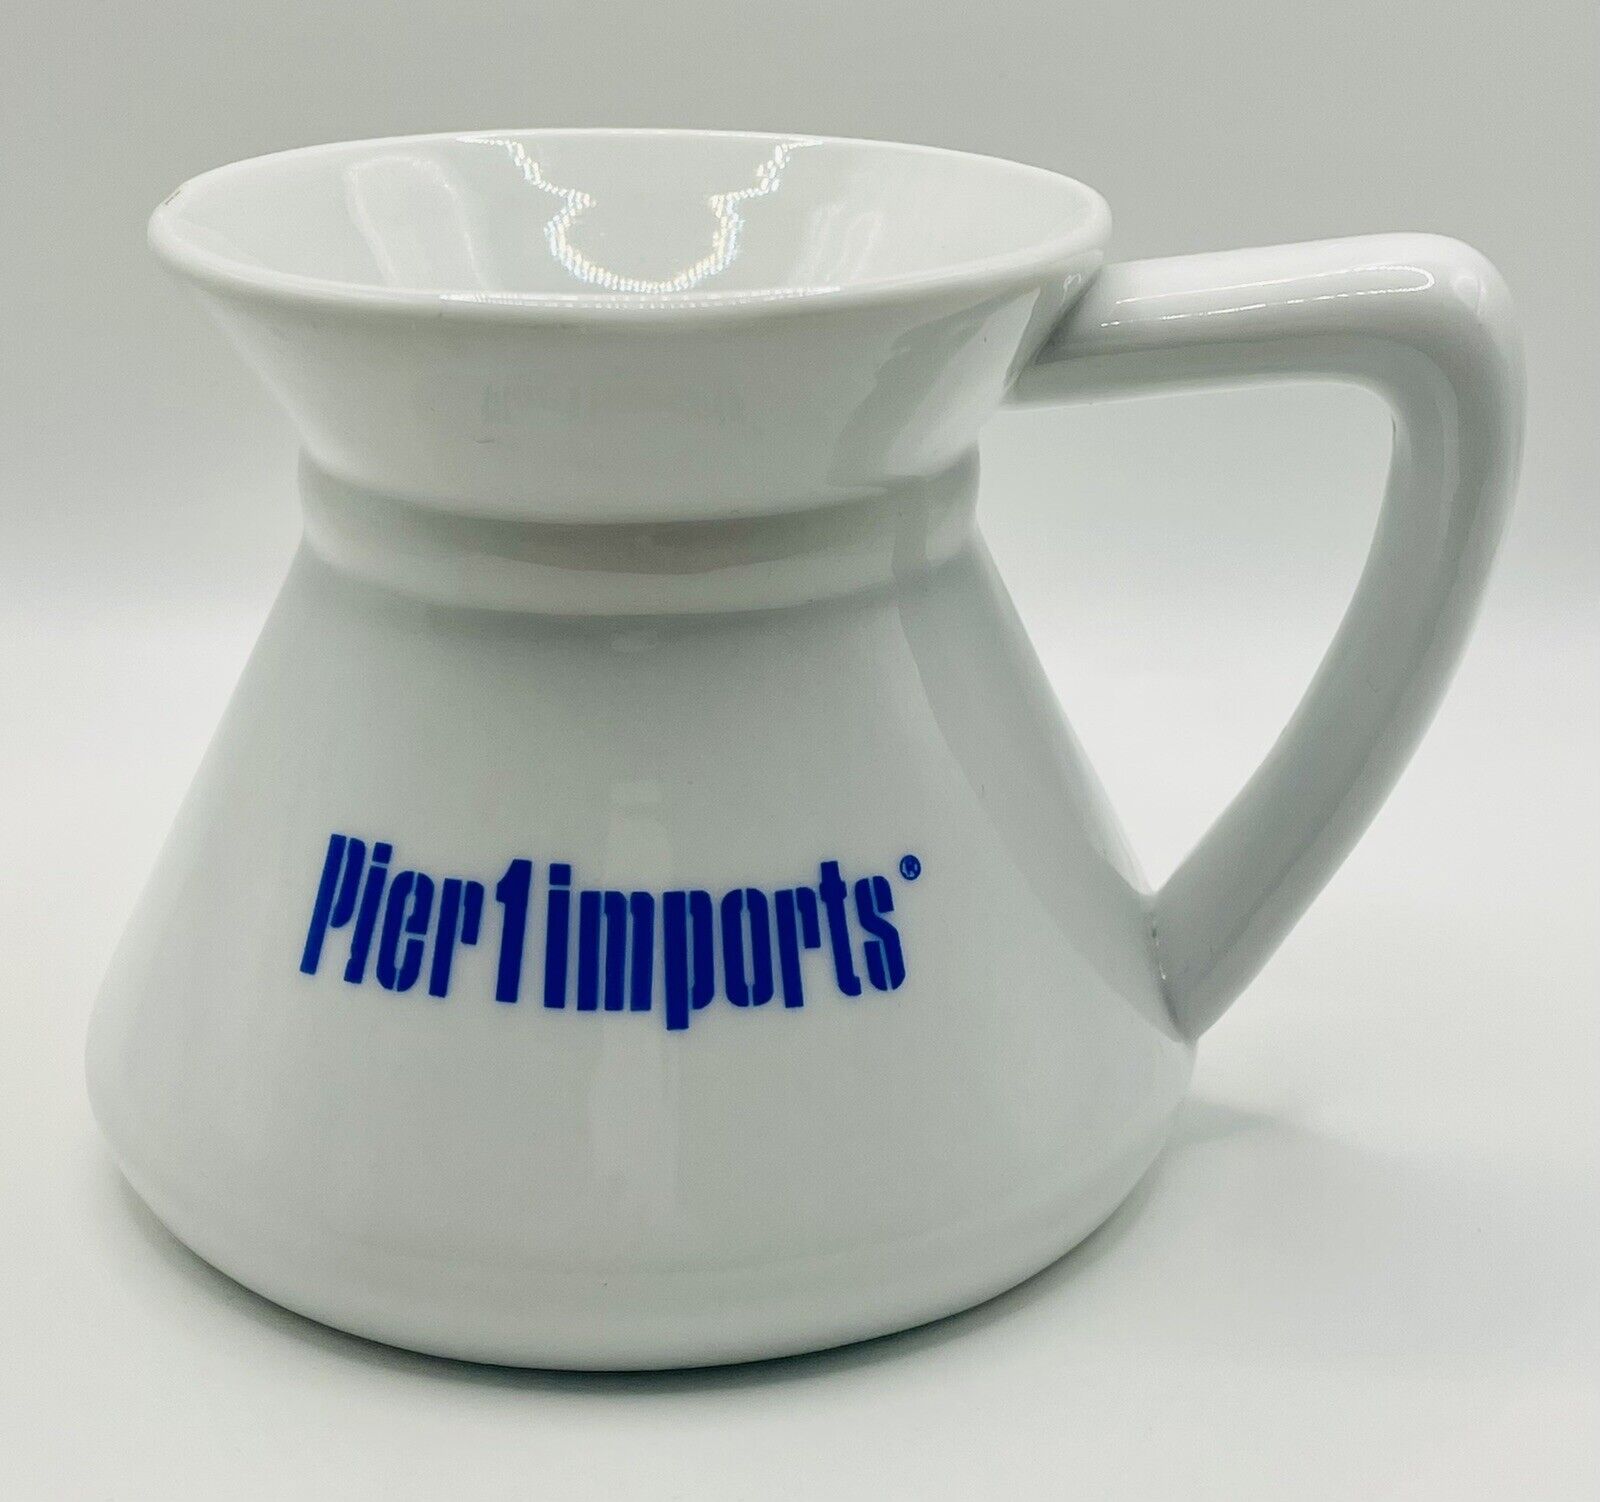 Pier 1 Imports Advertising Promotional Mug